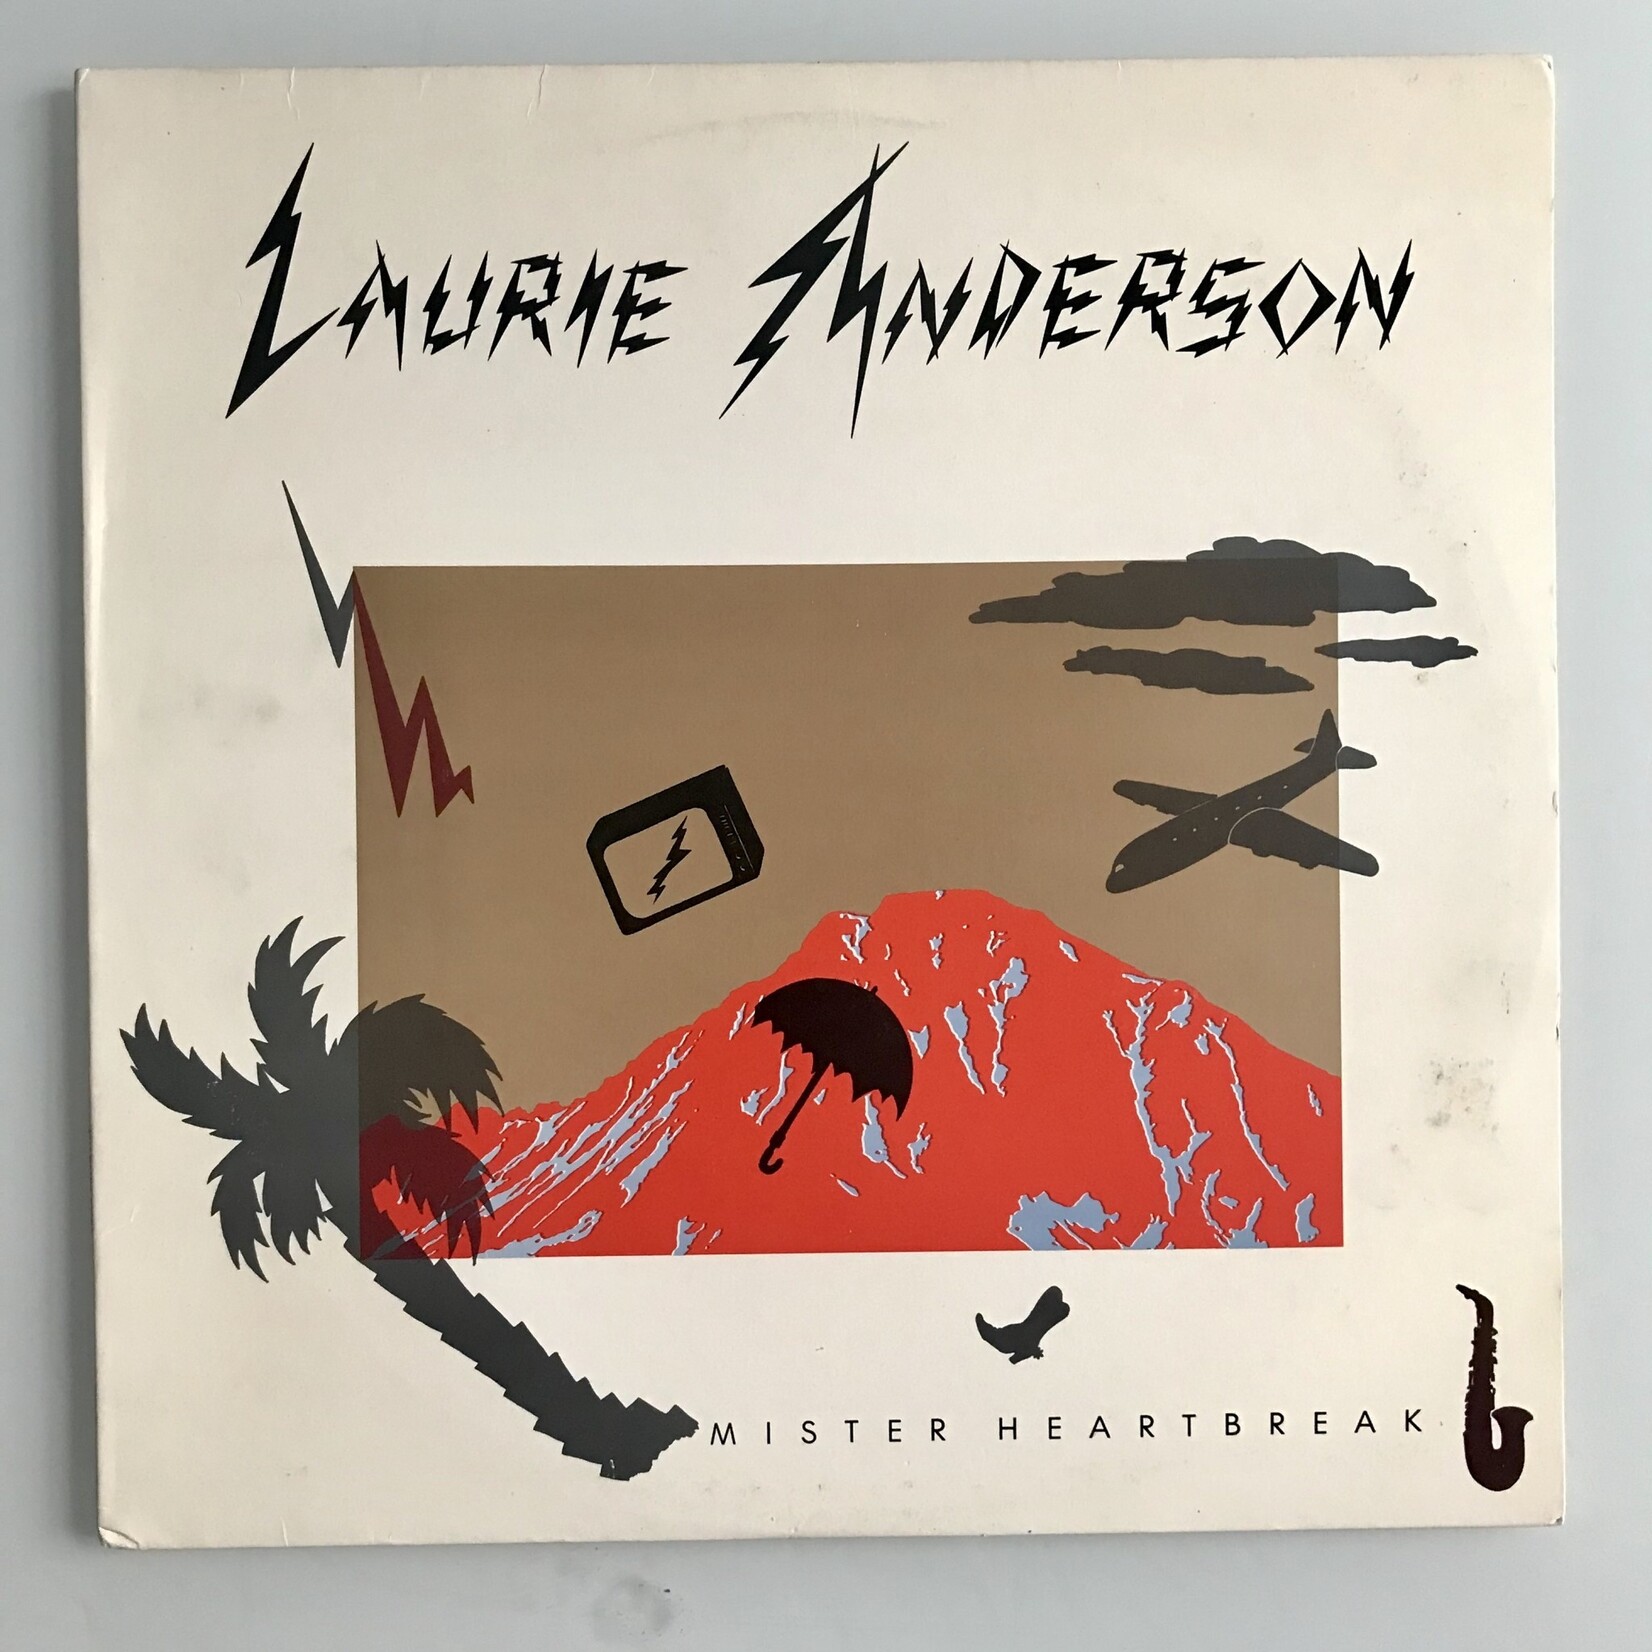 Laurie Anderson - Mister Heartbreak - 25077 1 - Vinyl LP (USED)